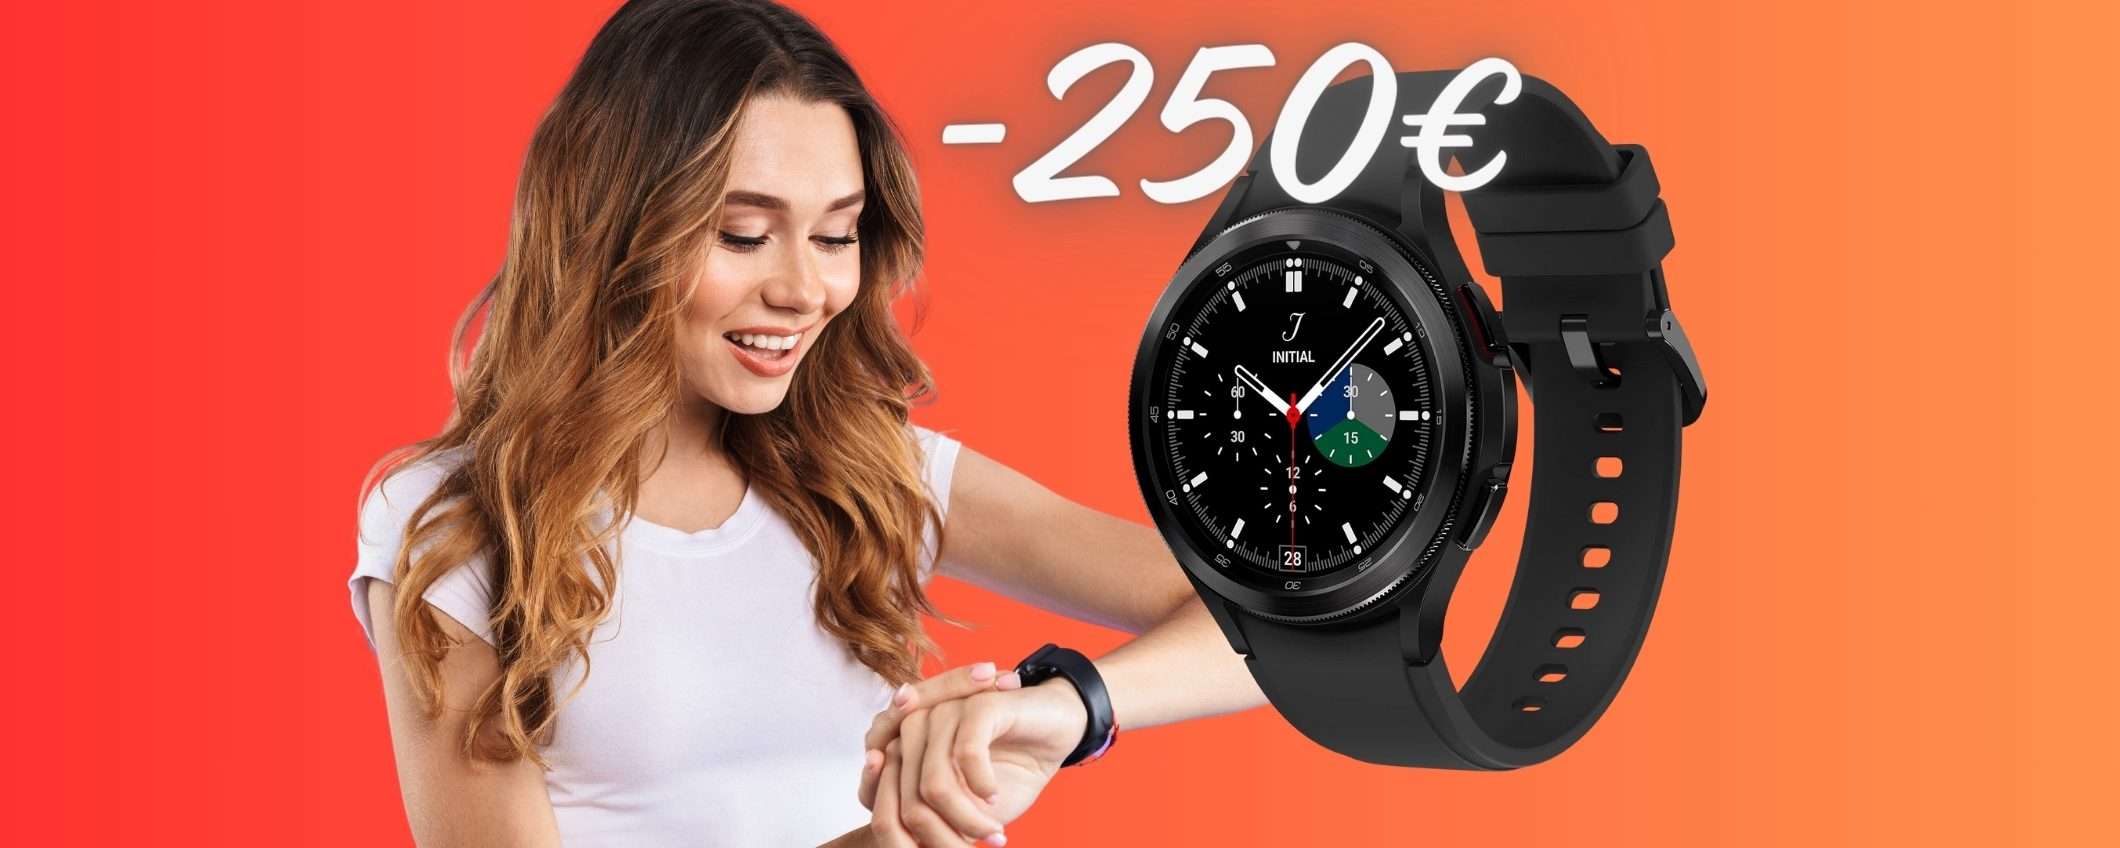 Samsung Galaxy Watch4 Classic in PROMOZIONE al 63% su Amazon